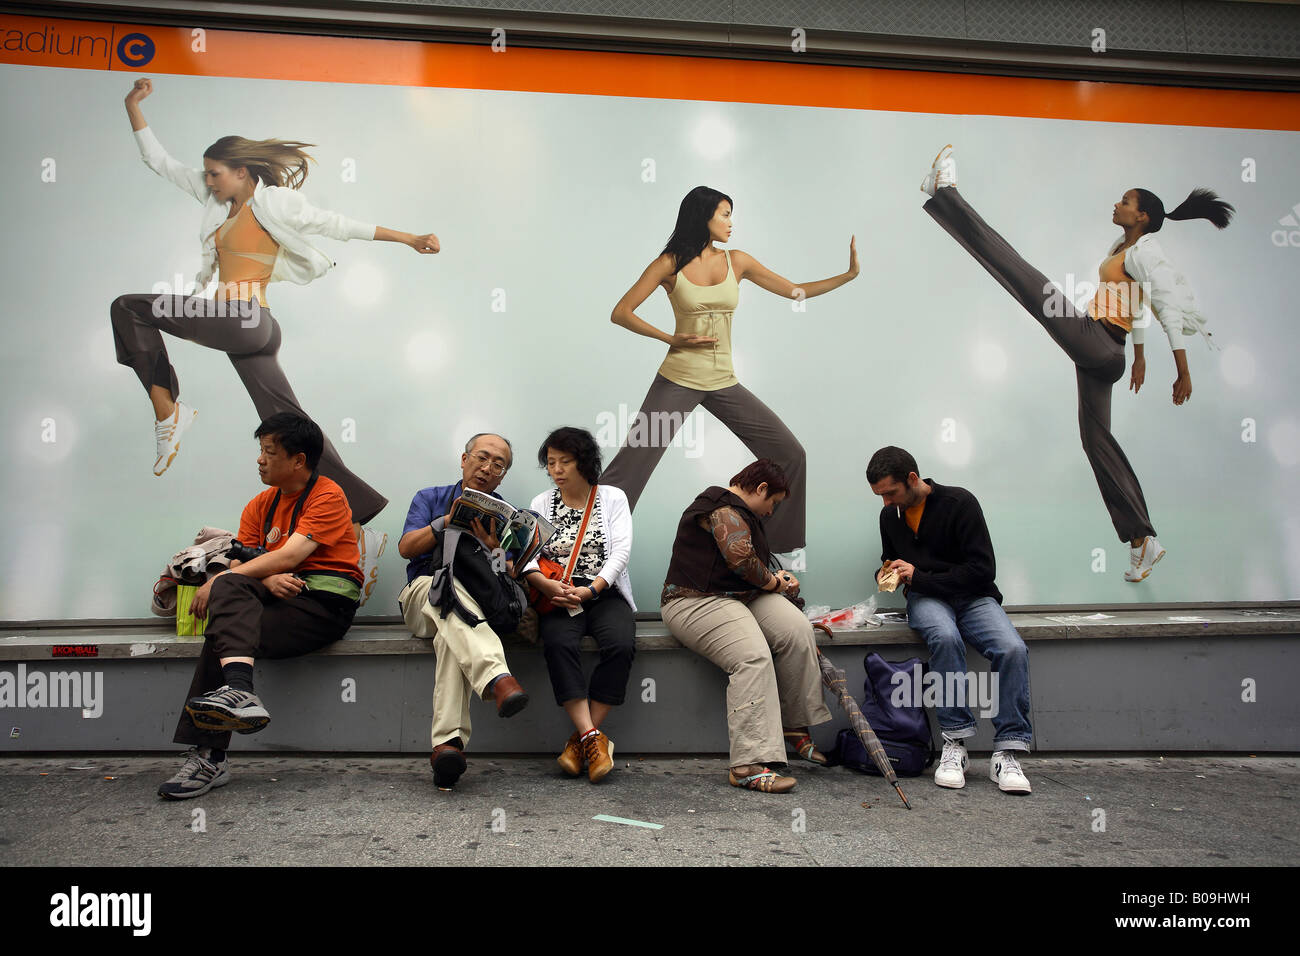 La gente en frente de un anuncio de Adidas, París, Francia Fotografía de  stock - Alamy